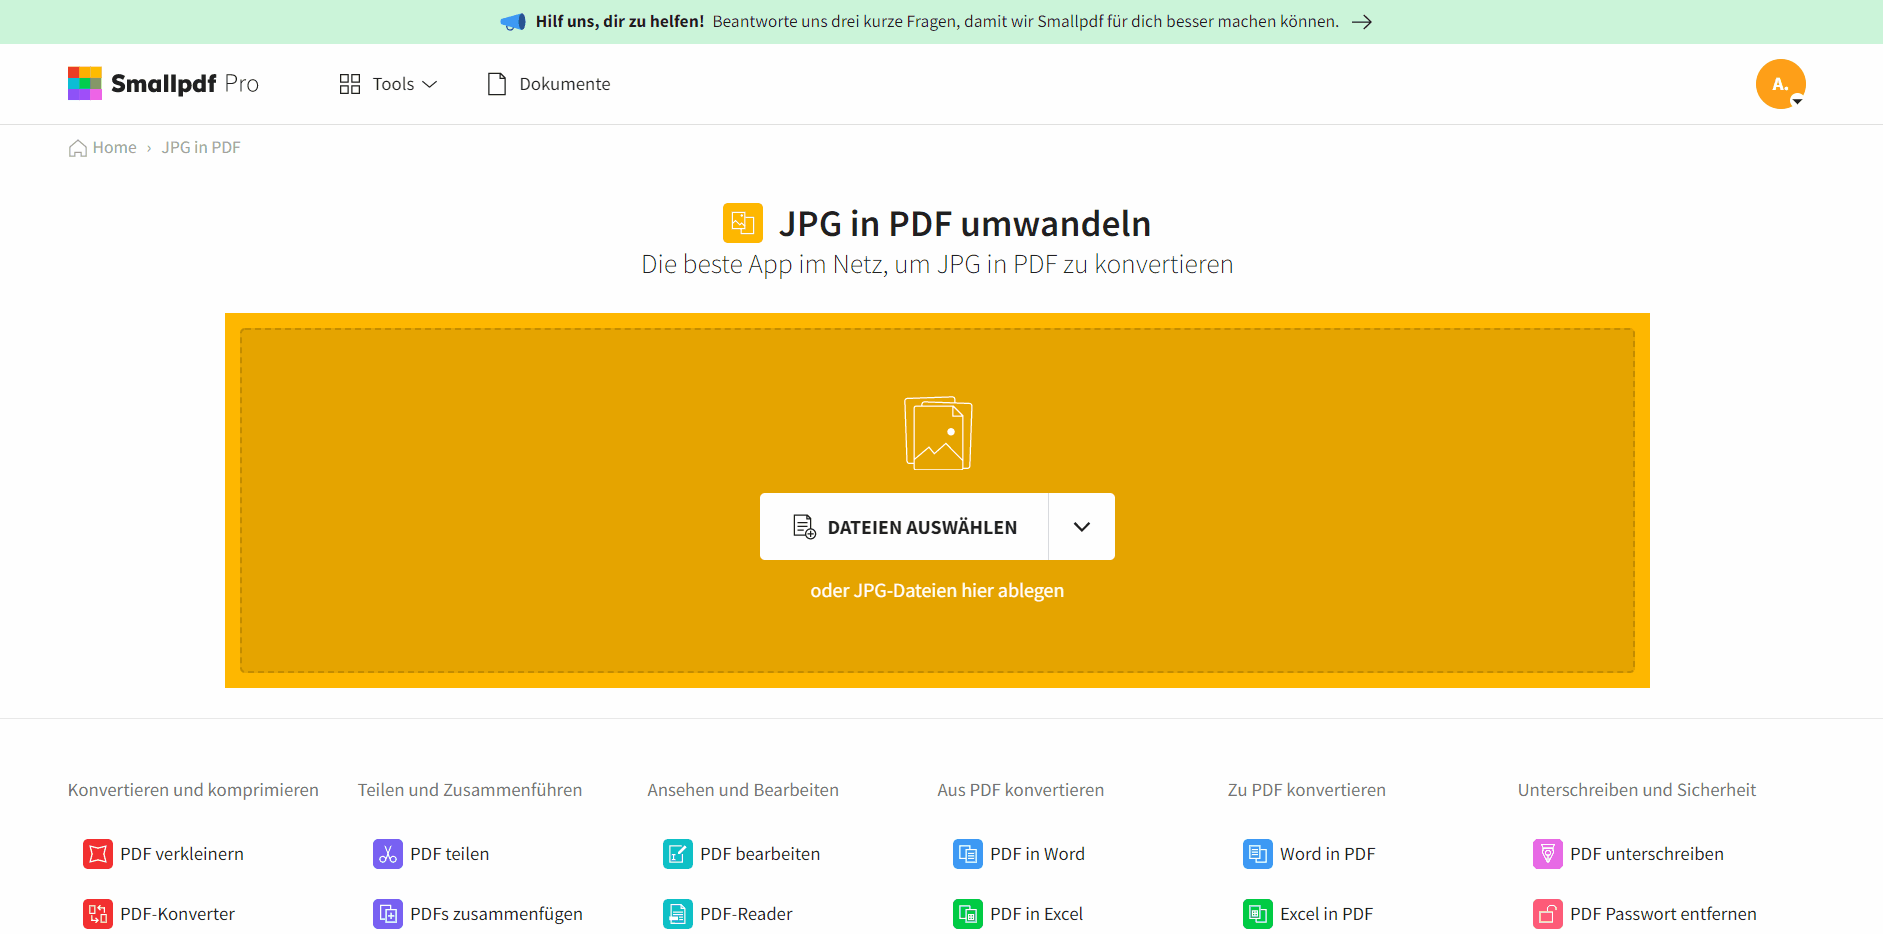 2022-01-10 - JPG in PDF umwandeln mit 200 KB oder weniger